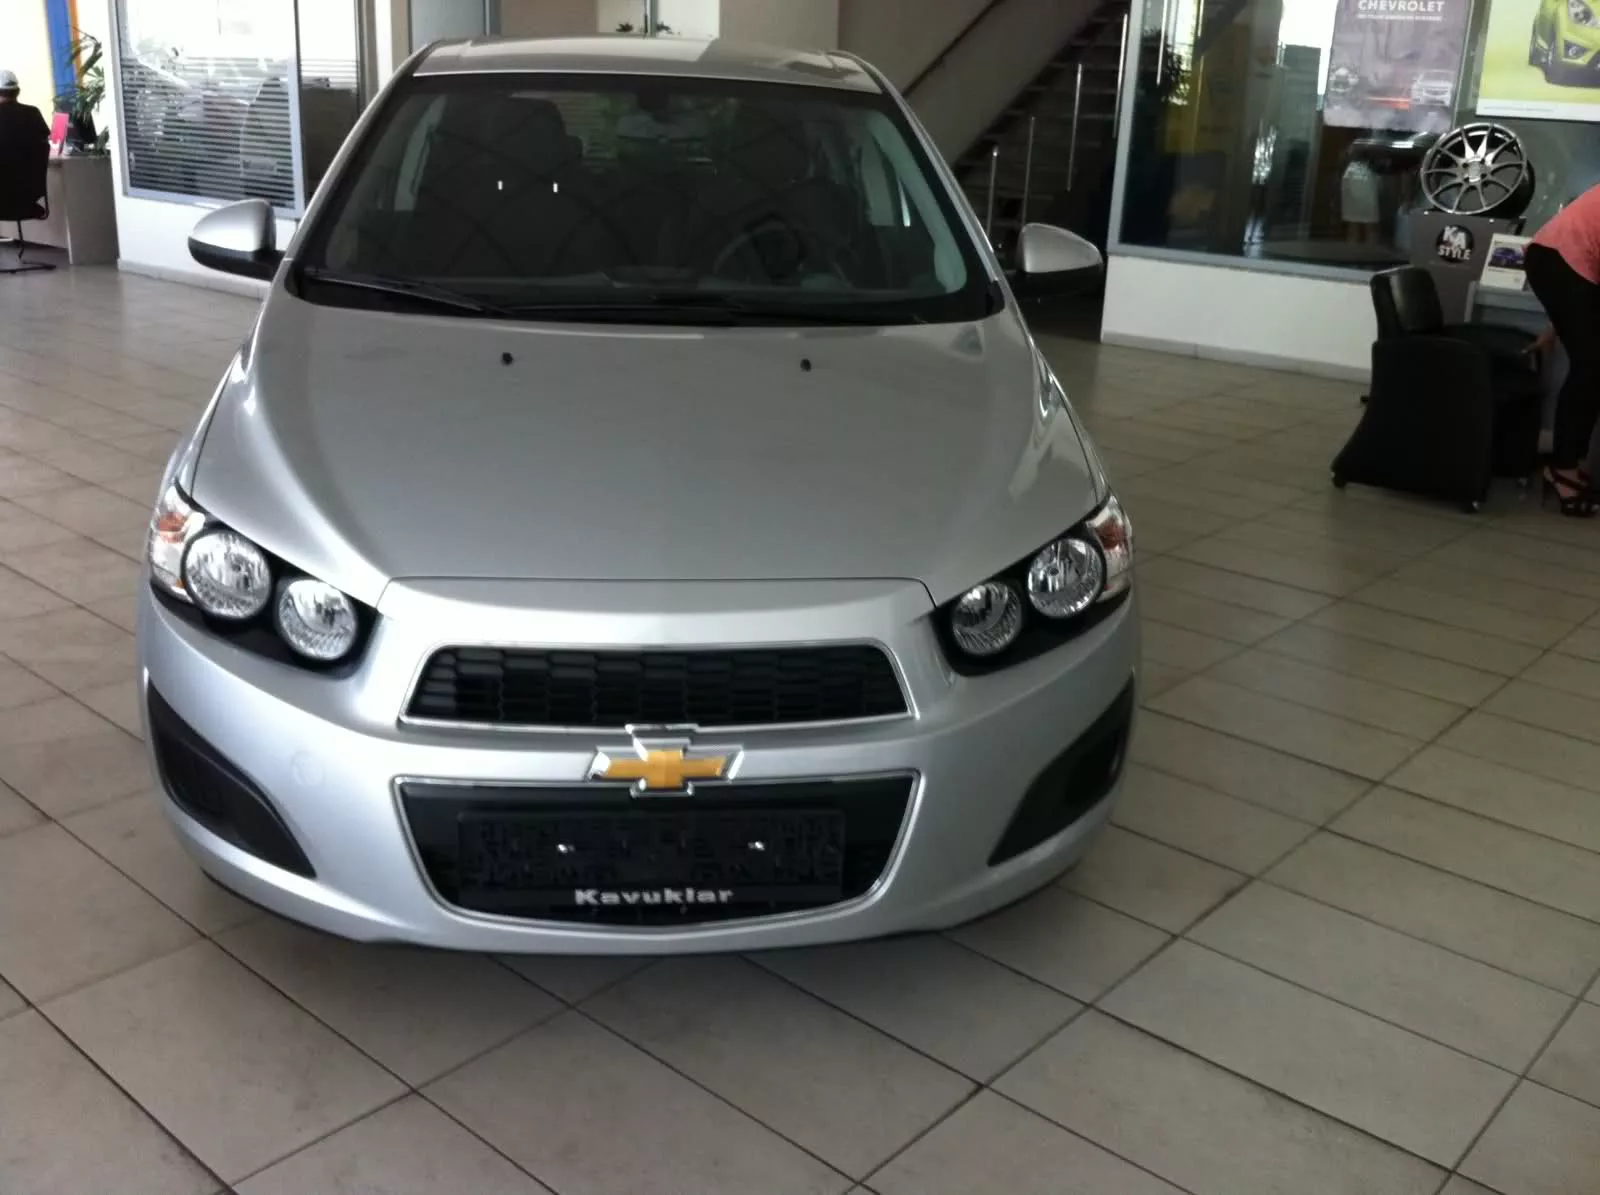 2012 Yeni Chevrolet Aveo - Herşeyiyle Test | Donanımhaber Forum